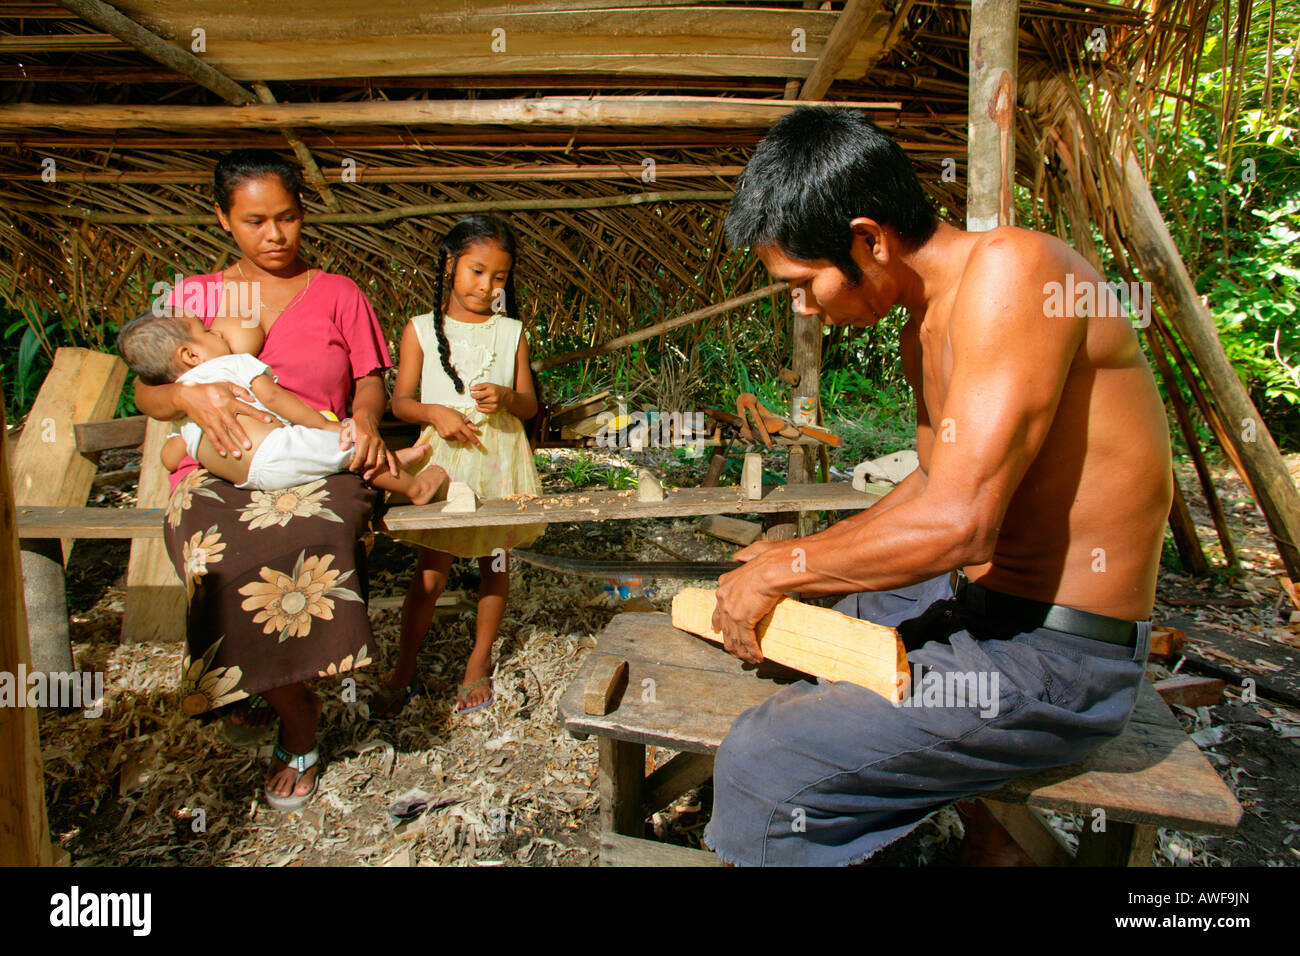 Family, Arawak natives, Santa Mission, Guyana, South America Stock Photo